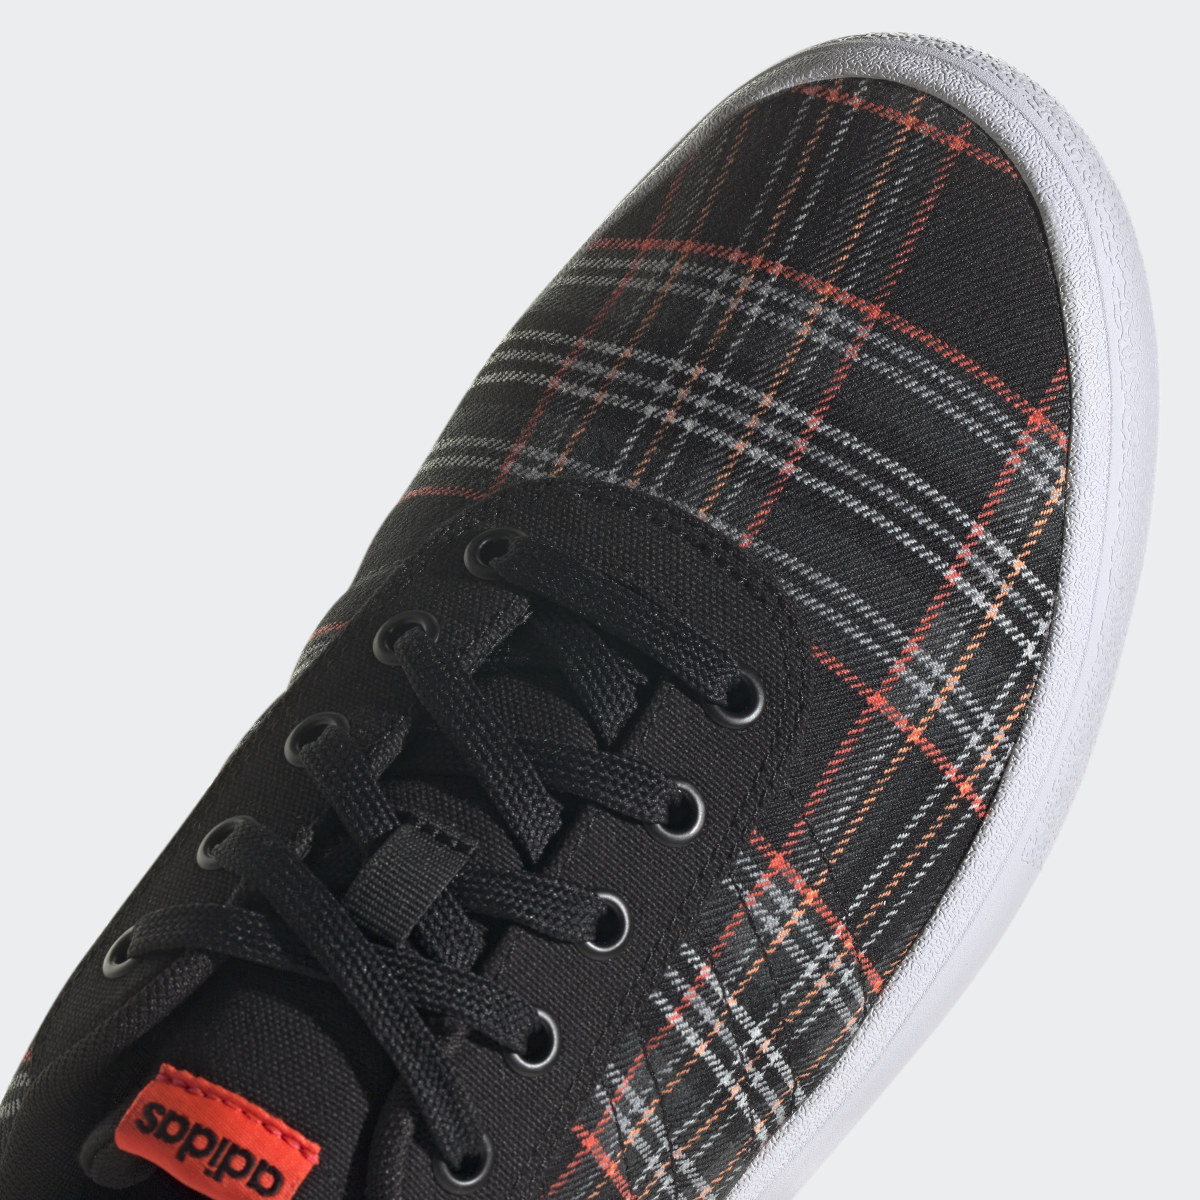 Adidas Vulc Raid3r Lifestyle Skateboarding 3-Stripes Branding Shoes. 10